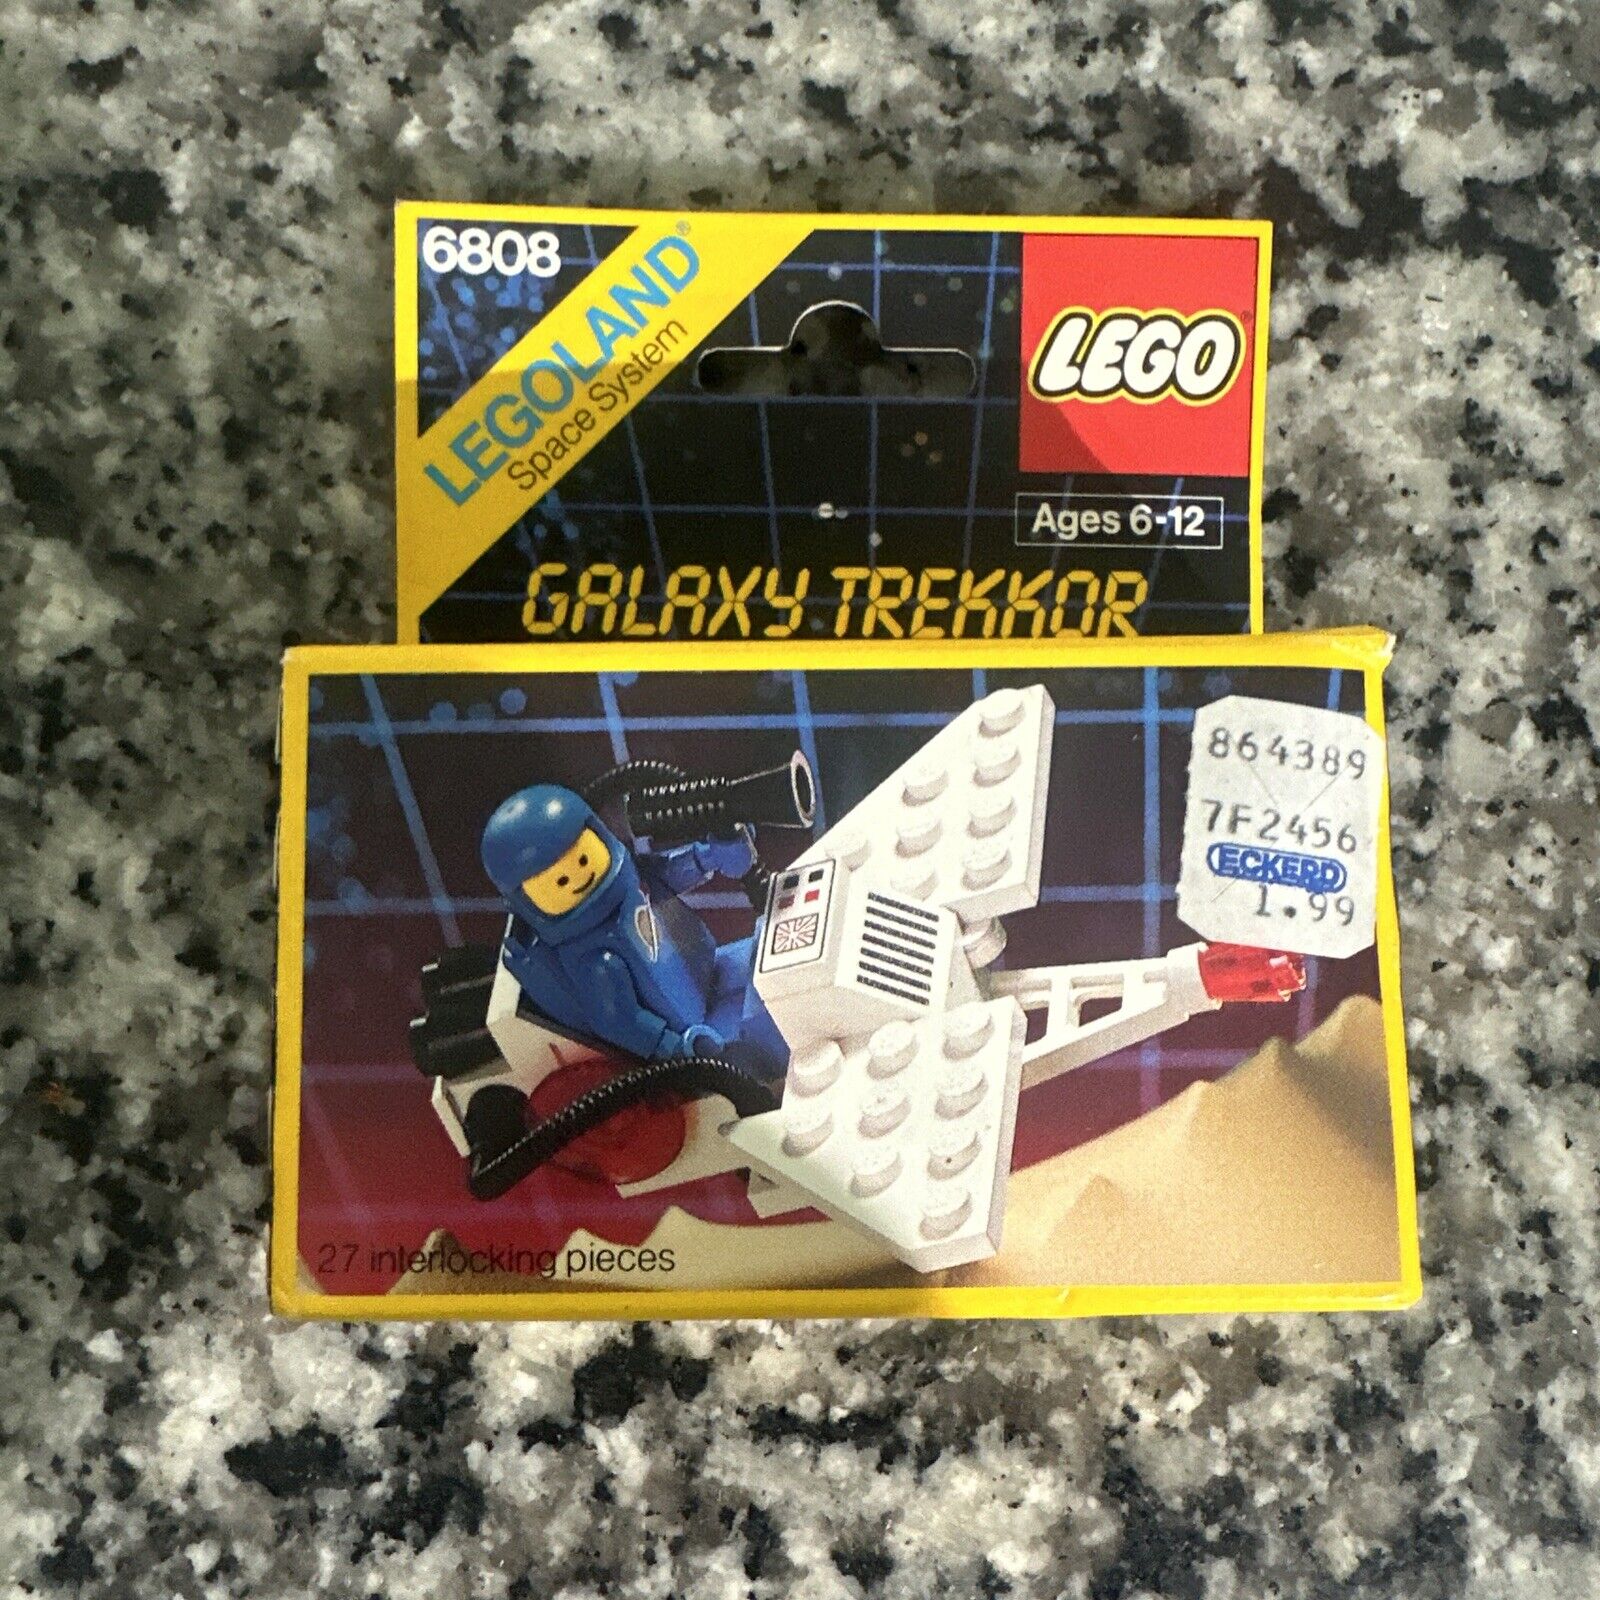 LEGO Space: Galaxy Trekkor (6808) NIB